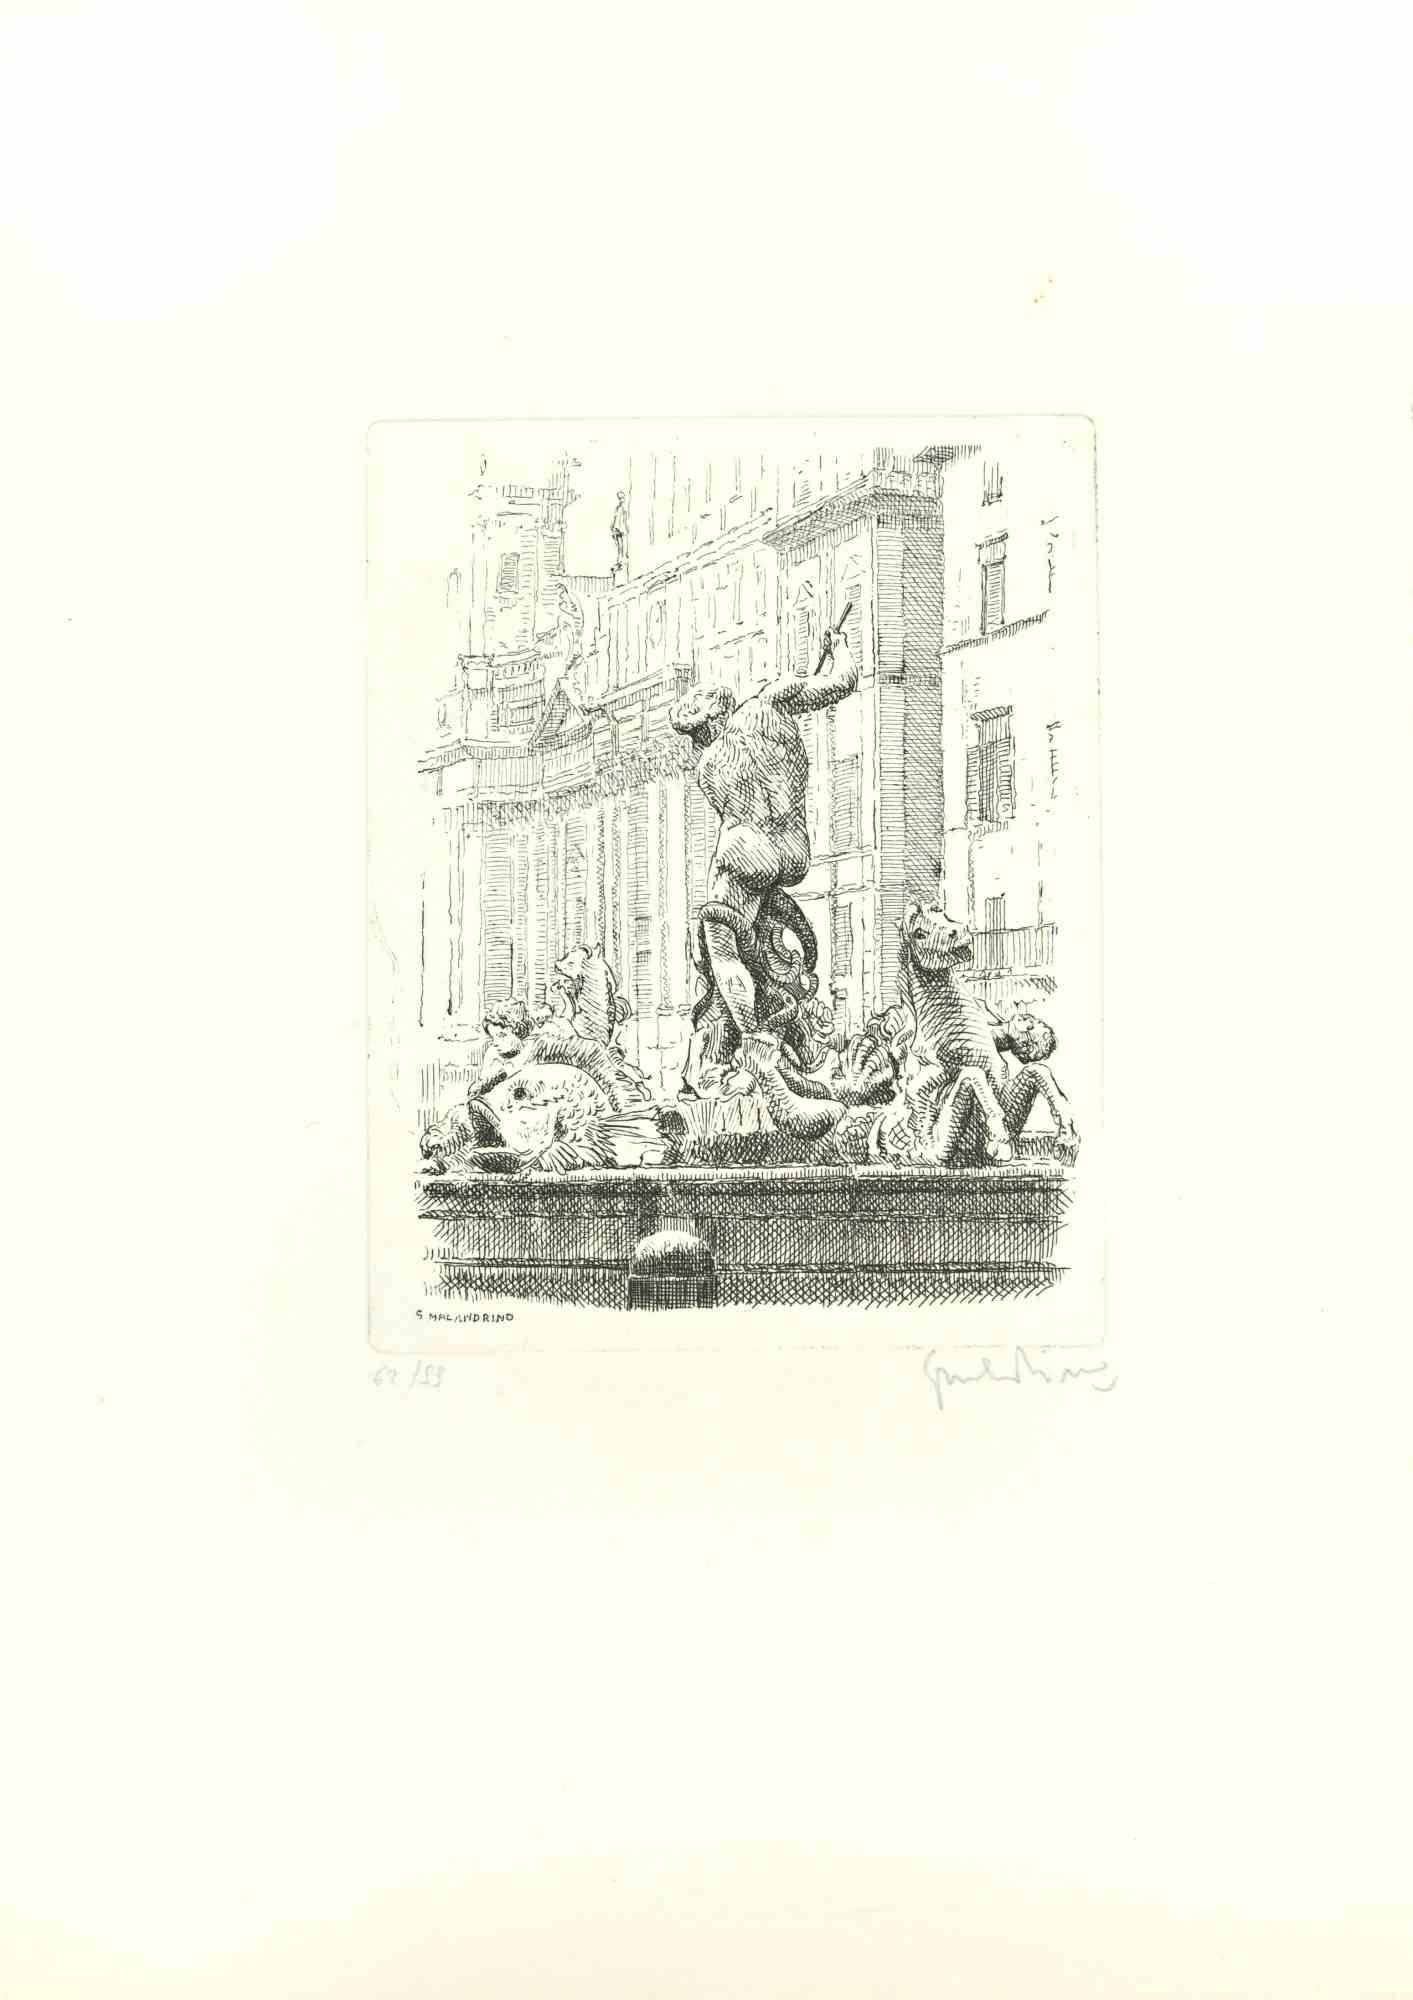 Navona Square ist ein Kunstwerk von Giuseppe Malandrino.

Druck in Ätztechnik.

Vom Künstler in der rechten unteren Ecke mit Bleistift handsigniert.

Nummerierte Auflage von 99 Exemplaren.

Guter Zustand. 

Dieses Kunstwerk stellt die wunderschöne